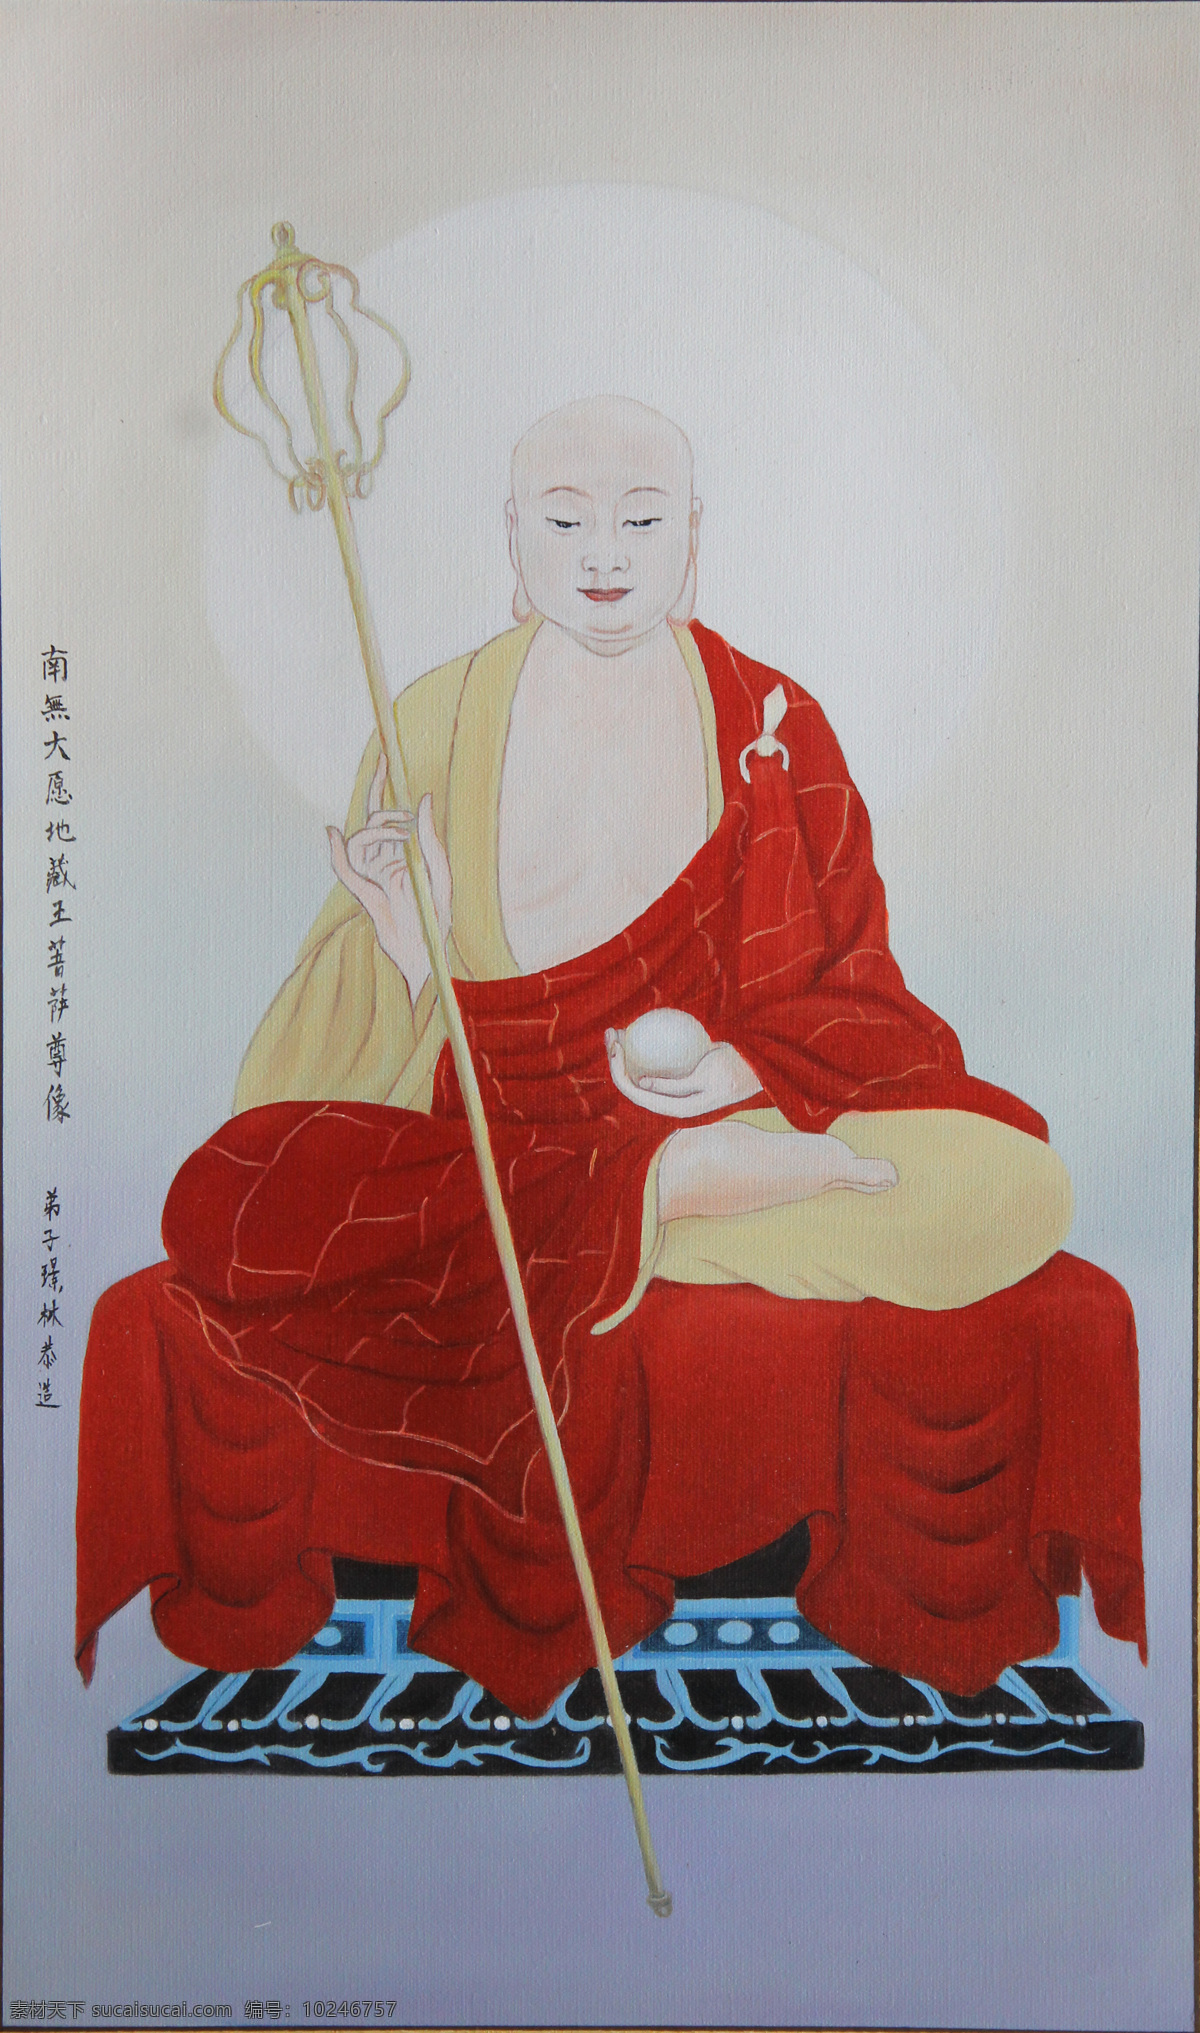 地藏王菩萨 油画动物 牡丹 油画 工笔画 国画 绘画 张璟林 静物 风景 文化艺术 绘画书法